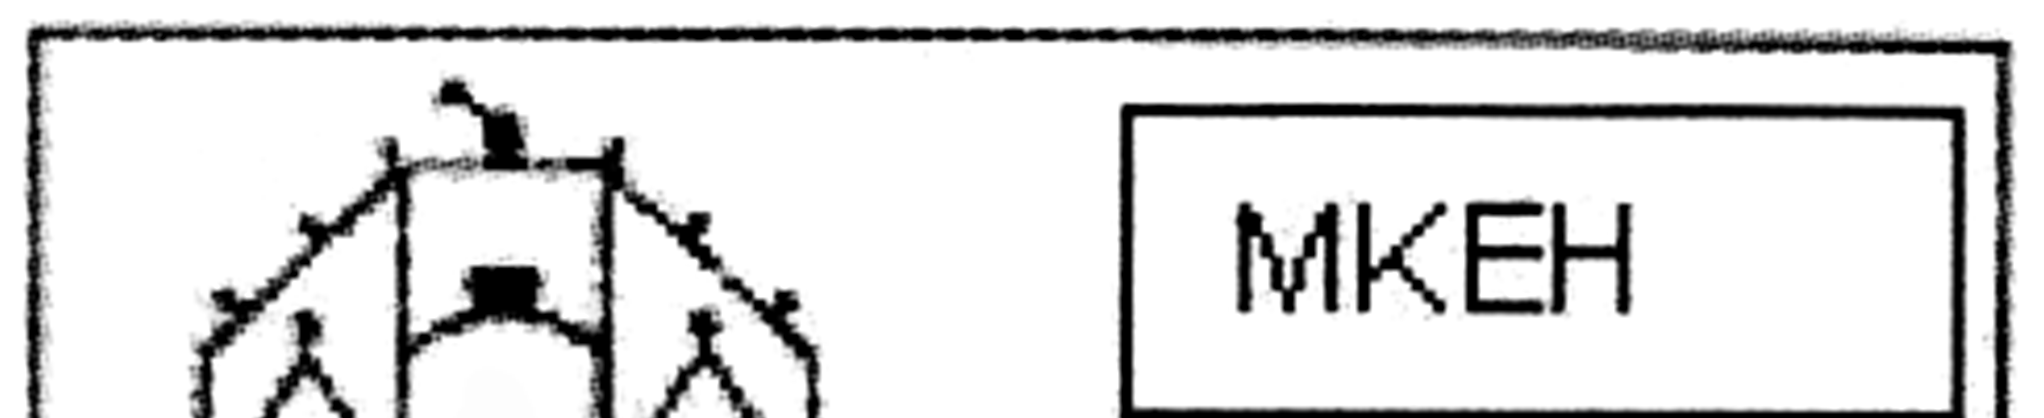 b) A hitelesítő öntapadó matrica leírása, rajzolata: Fekvő téglalap alakú, keretes mezőben, bal oldalon a Szentkorona stilizált jele.